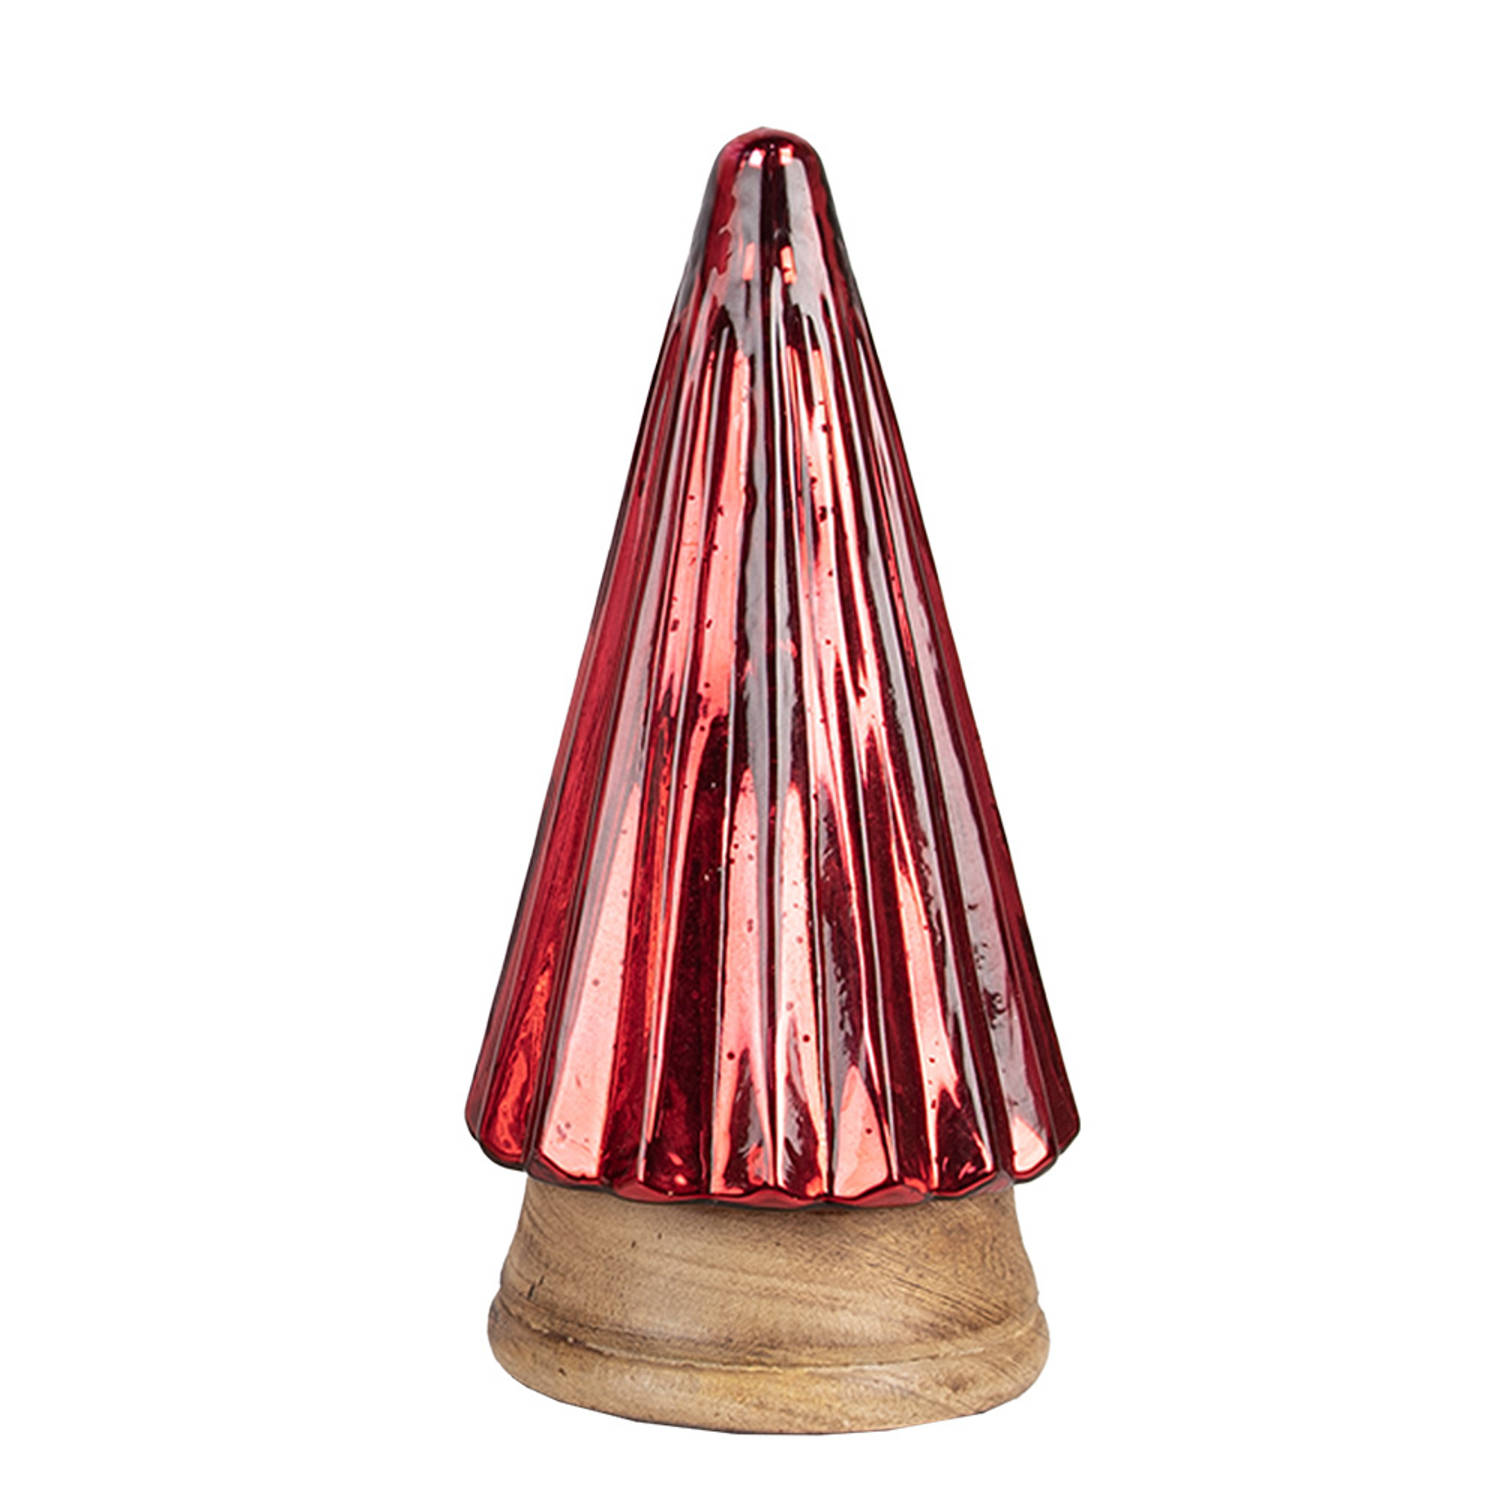 HAES DECO - Decoratieve Kerstboom - Formaat Ø 11x20 cm - Kleur Rood - Materiaal Hout / Glas - Kerstversiering, Kerstdecoratie